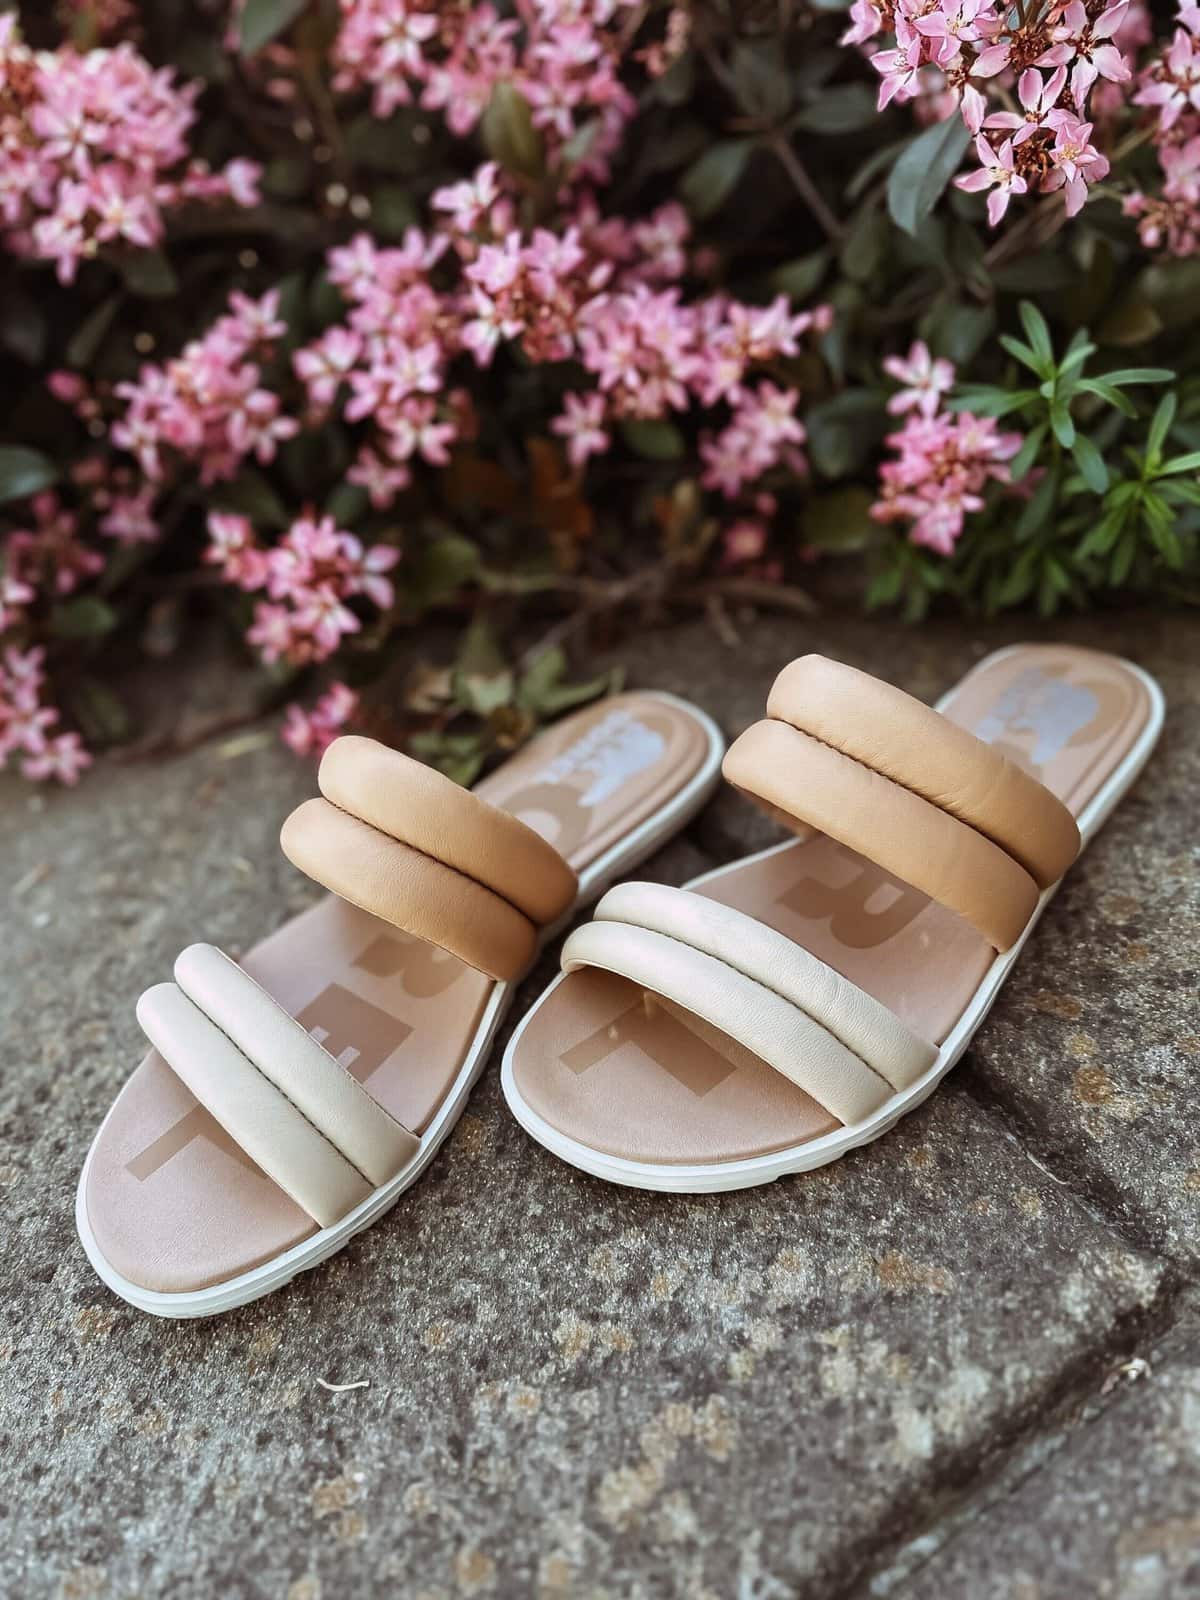 Sorel sandals